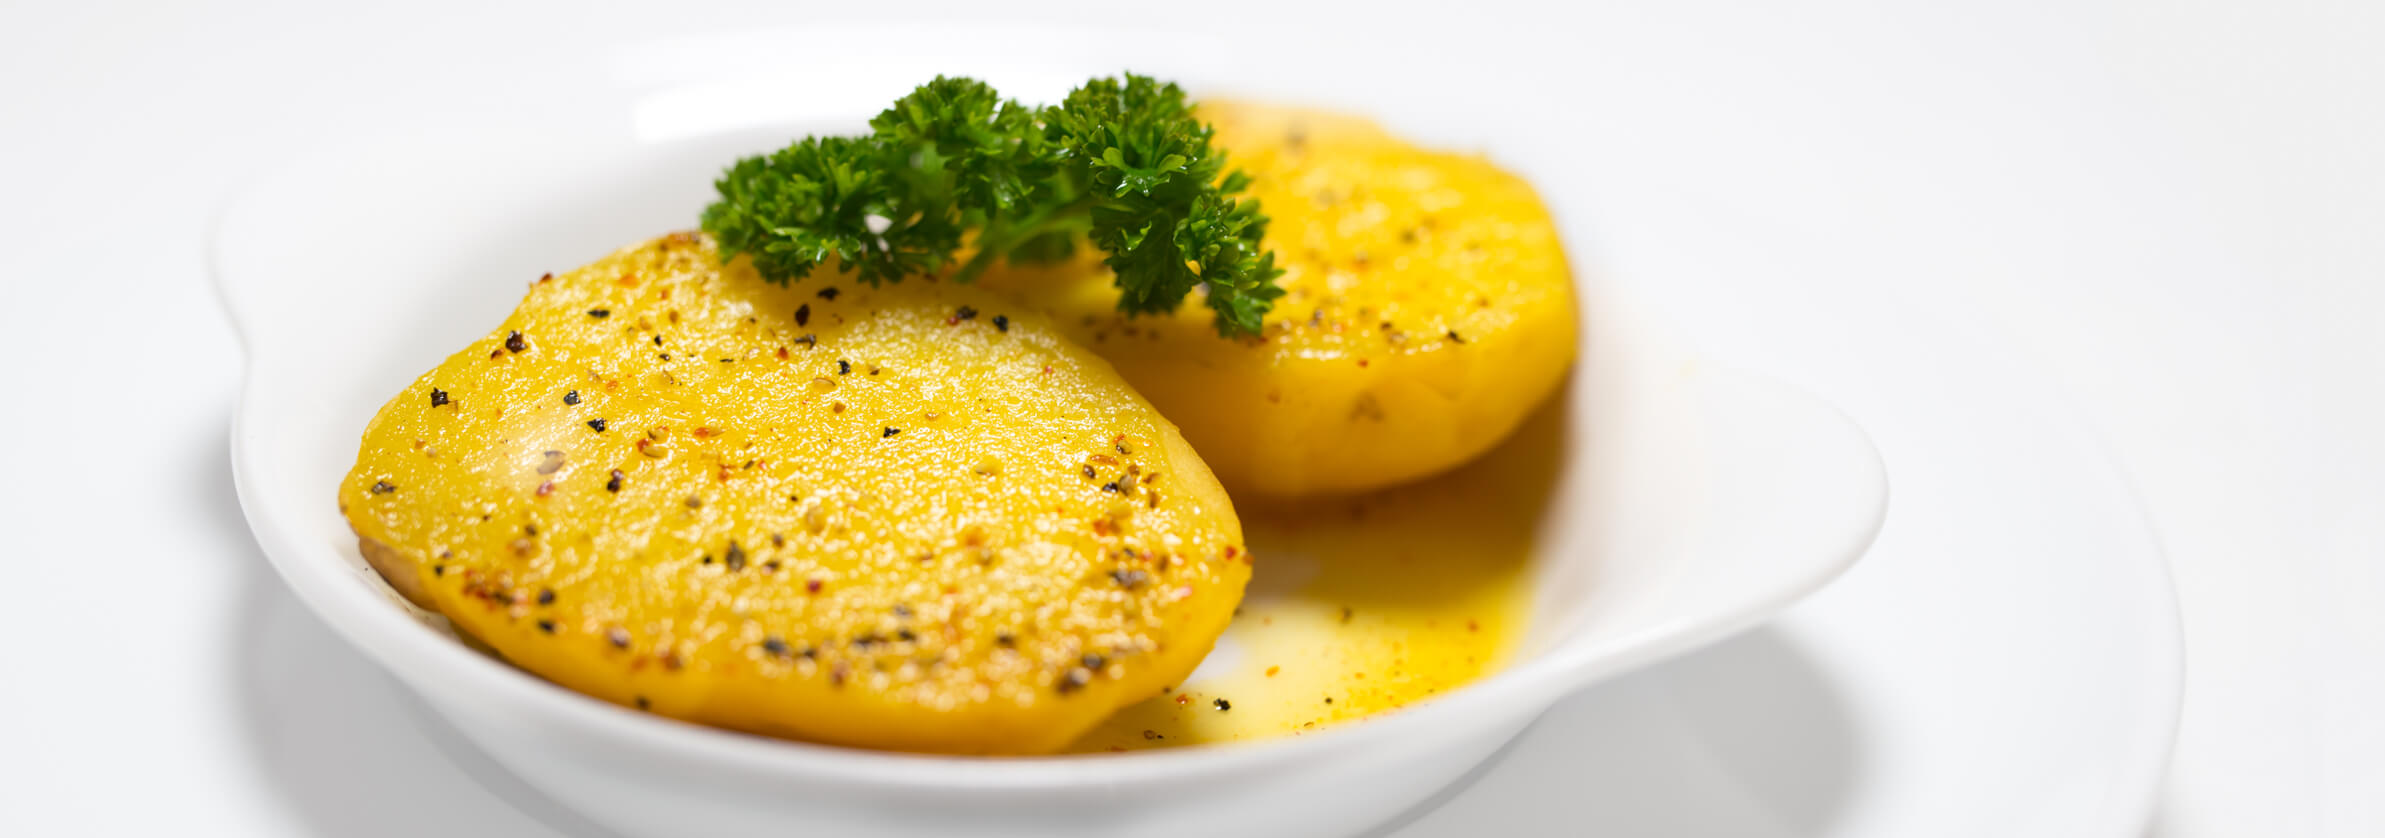 Bei uns gibt es Kartoffeln immer in Kombination mit gedmpftem Gemüse oder Obst